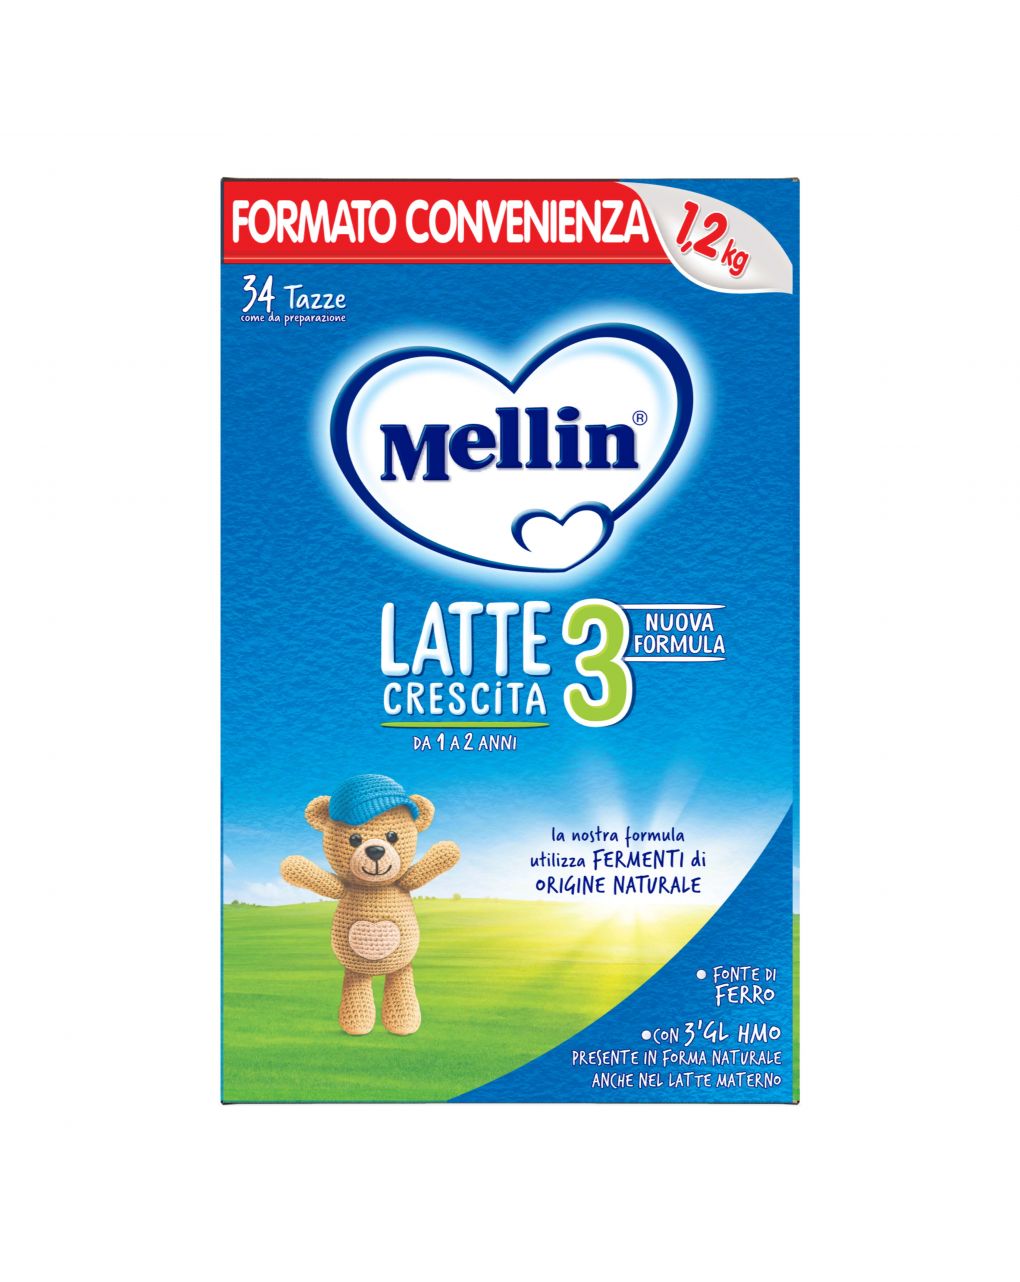 Mellin - latte mellin 3 polvere 1200g